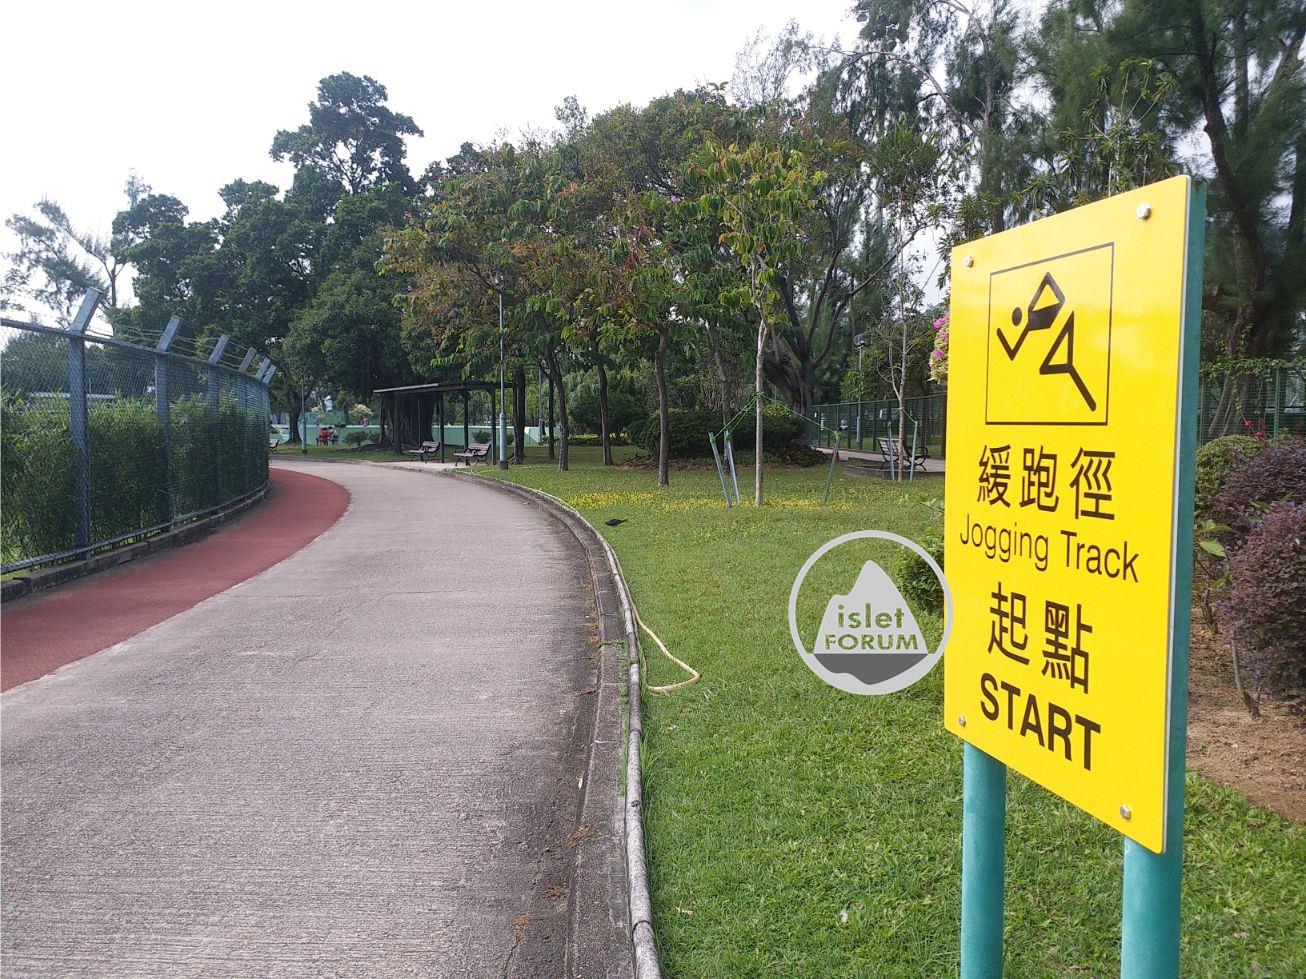 九龍仔公園kowloon tsai park (23).jpg